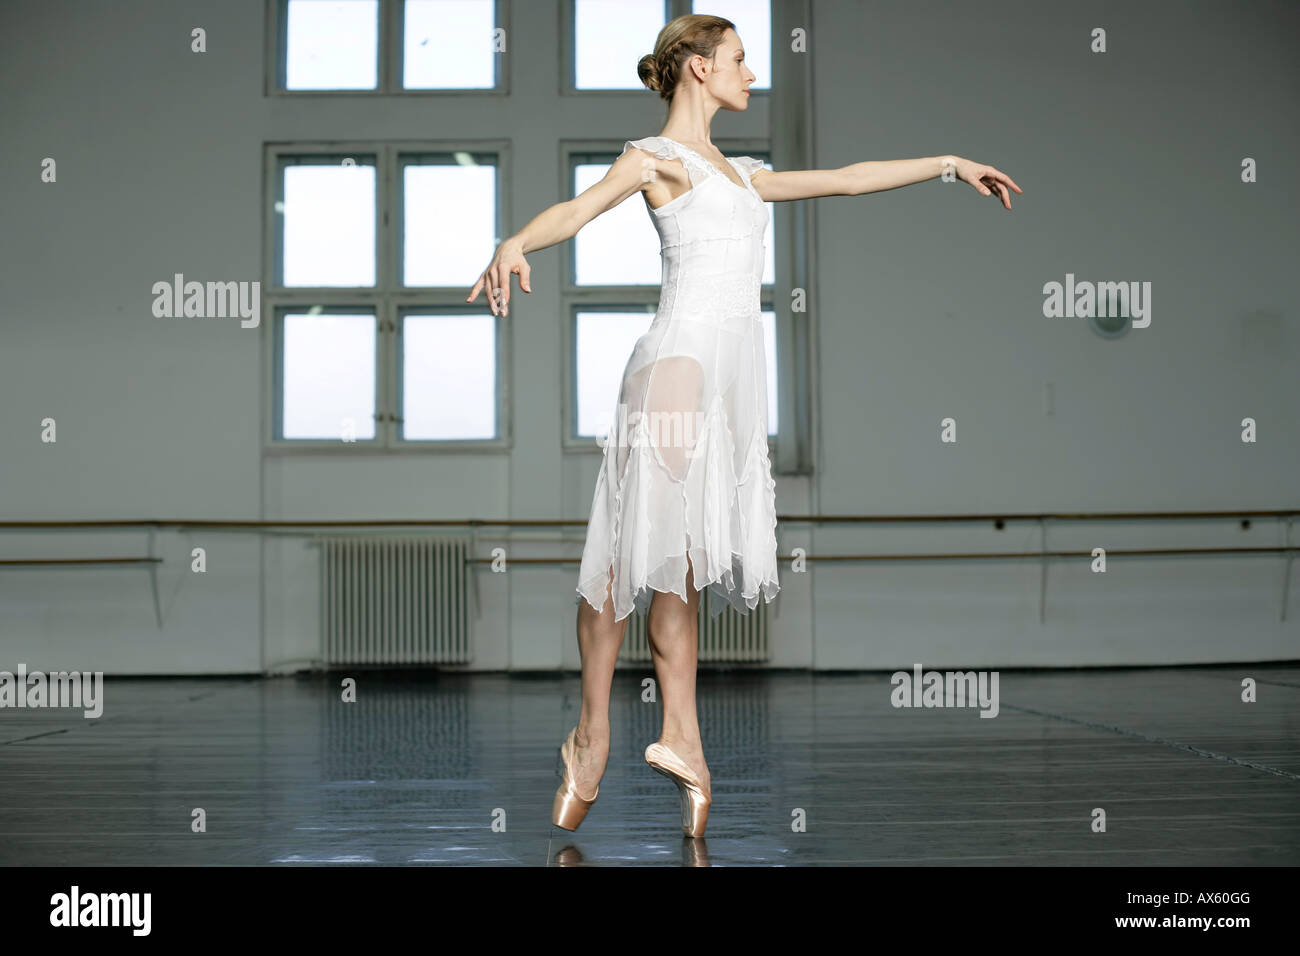 Una mujer bailarina de ballet haciendo toe-dance Foto de stock